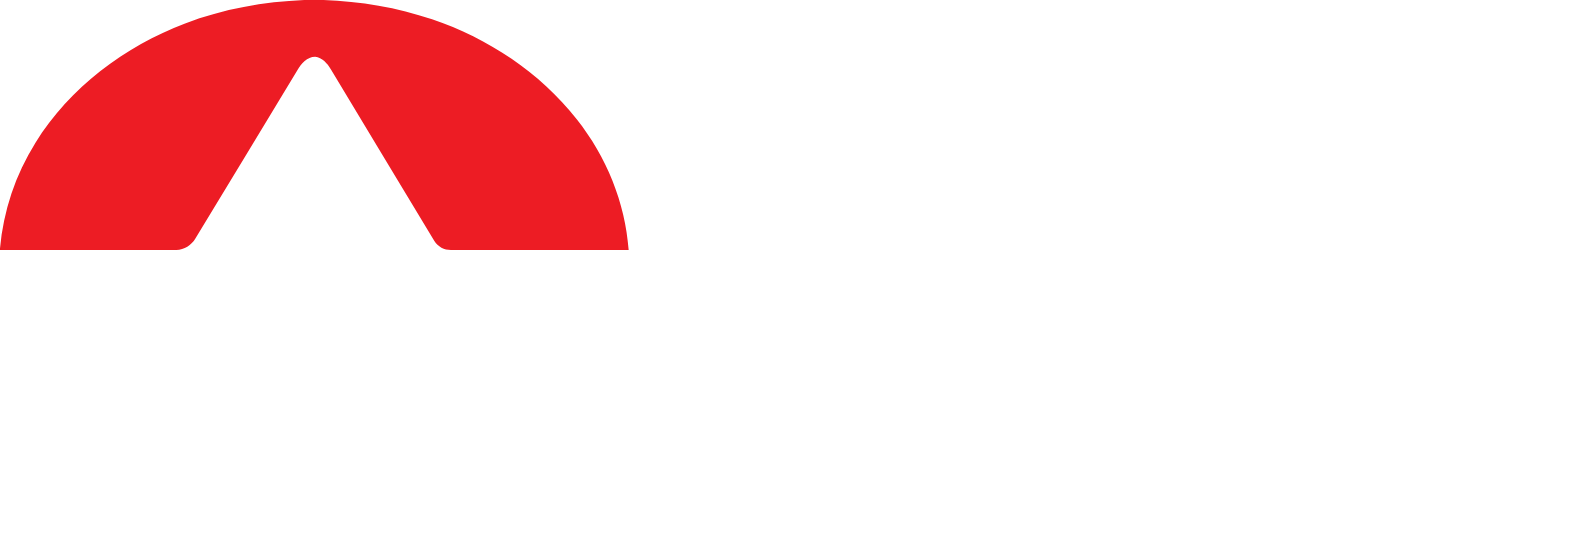 Olin logo large for dark backgrounds (transparent PNG)